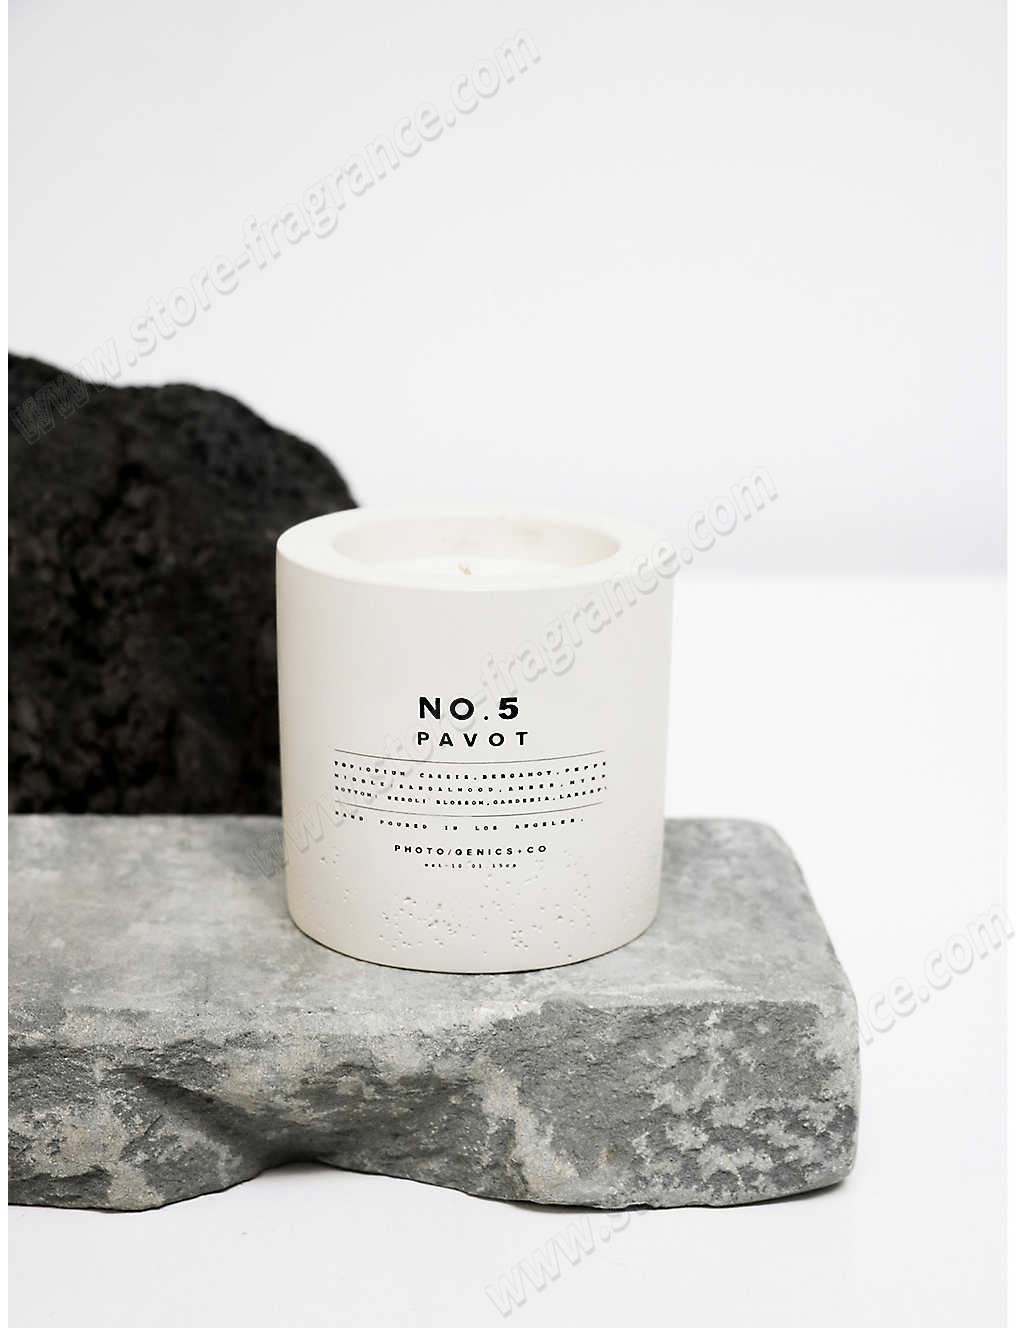 PHOTOGENICS & CO./No. 5 Pavot concrete candle 8oz ✿ Discount Store - -1